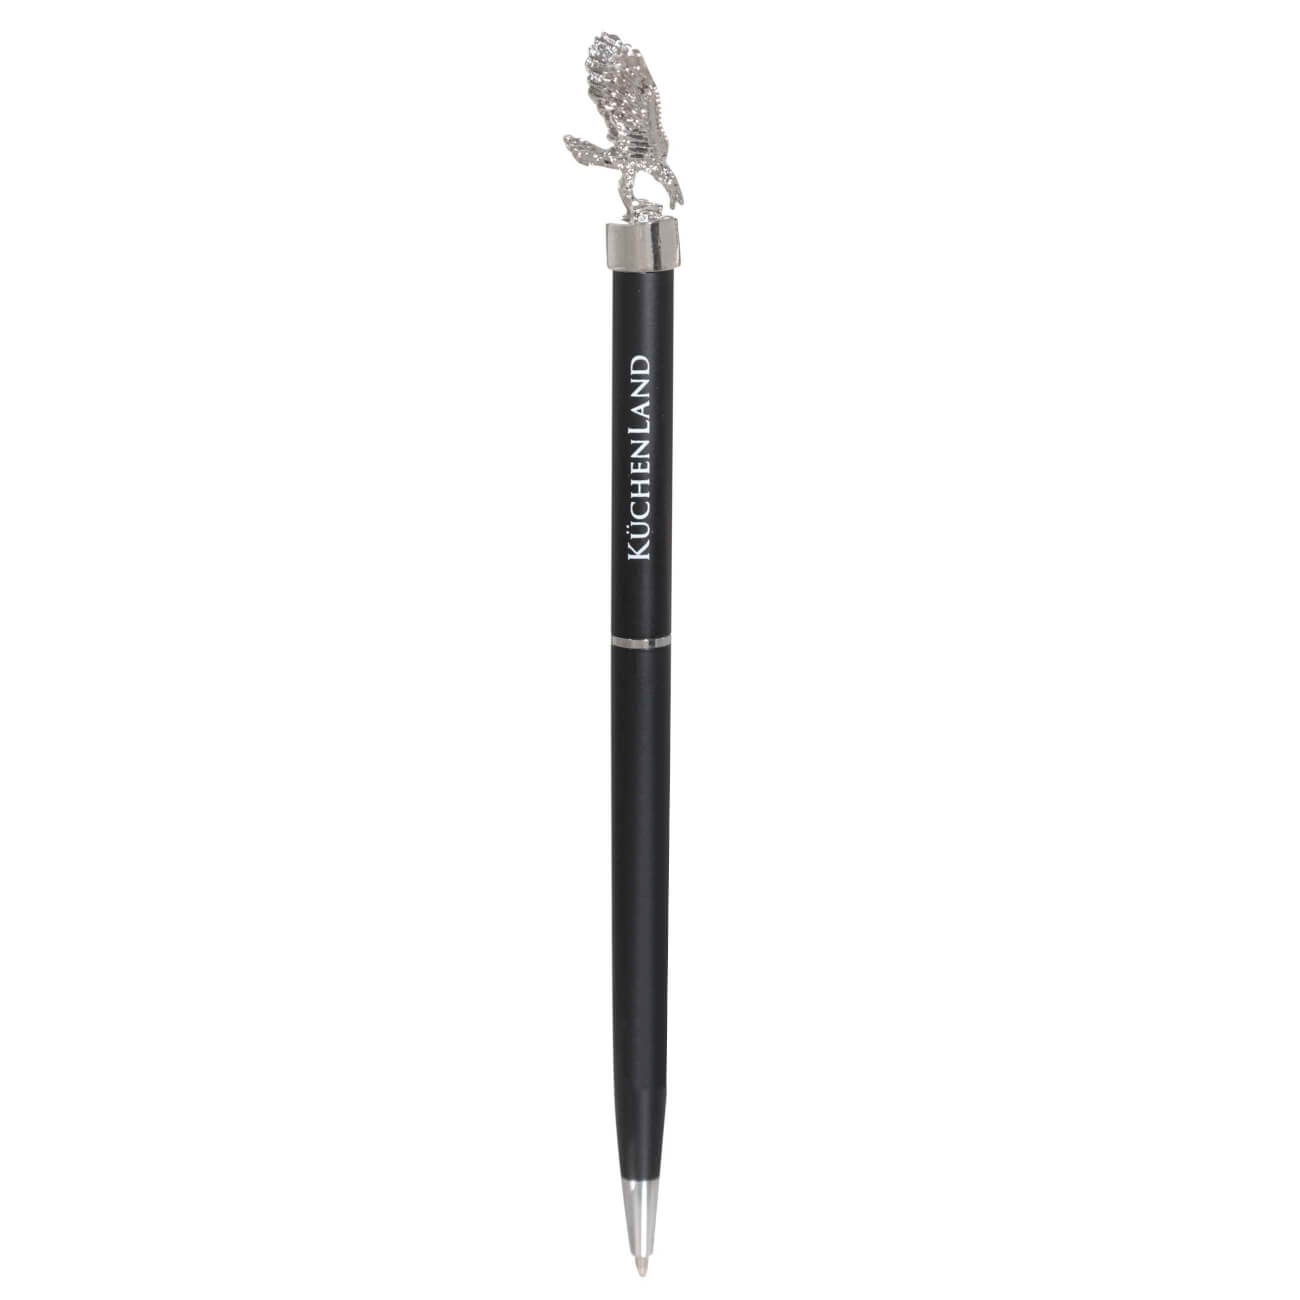 Ручка шариковая, 15 см, с фигуркой, сталь, черная, Орел, Draw figure ручка шариковая 14 см с фигуркой сталь черная медведь draw figure